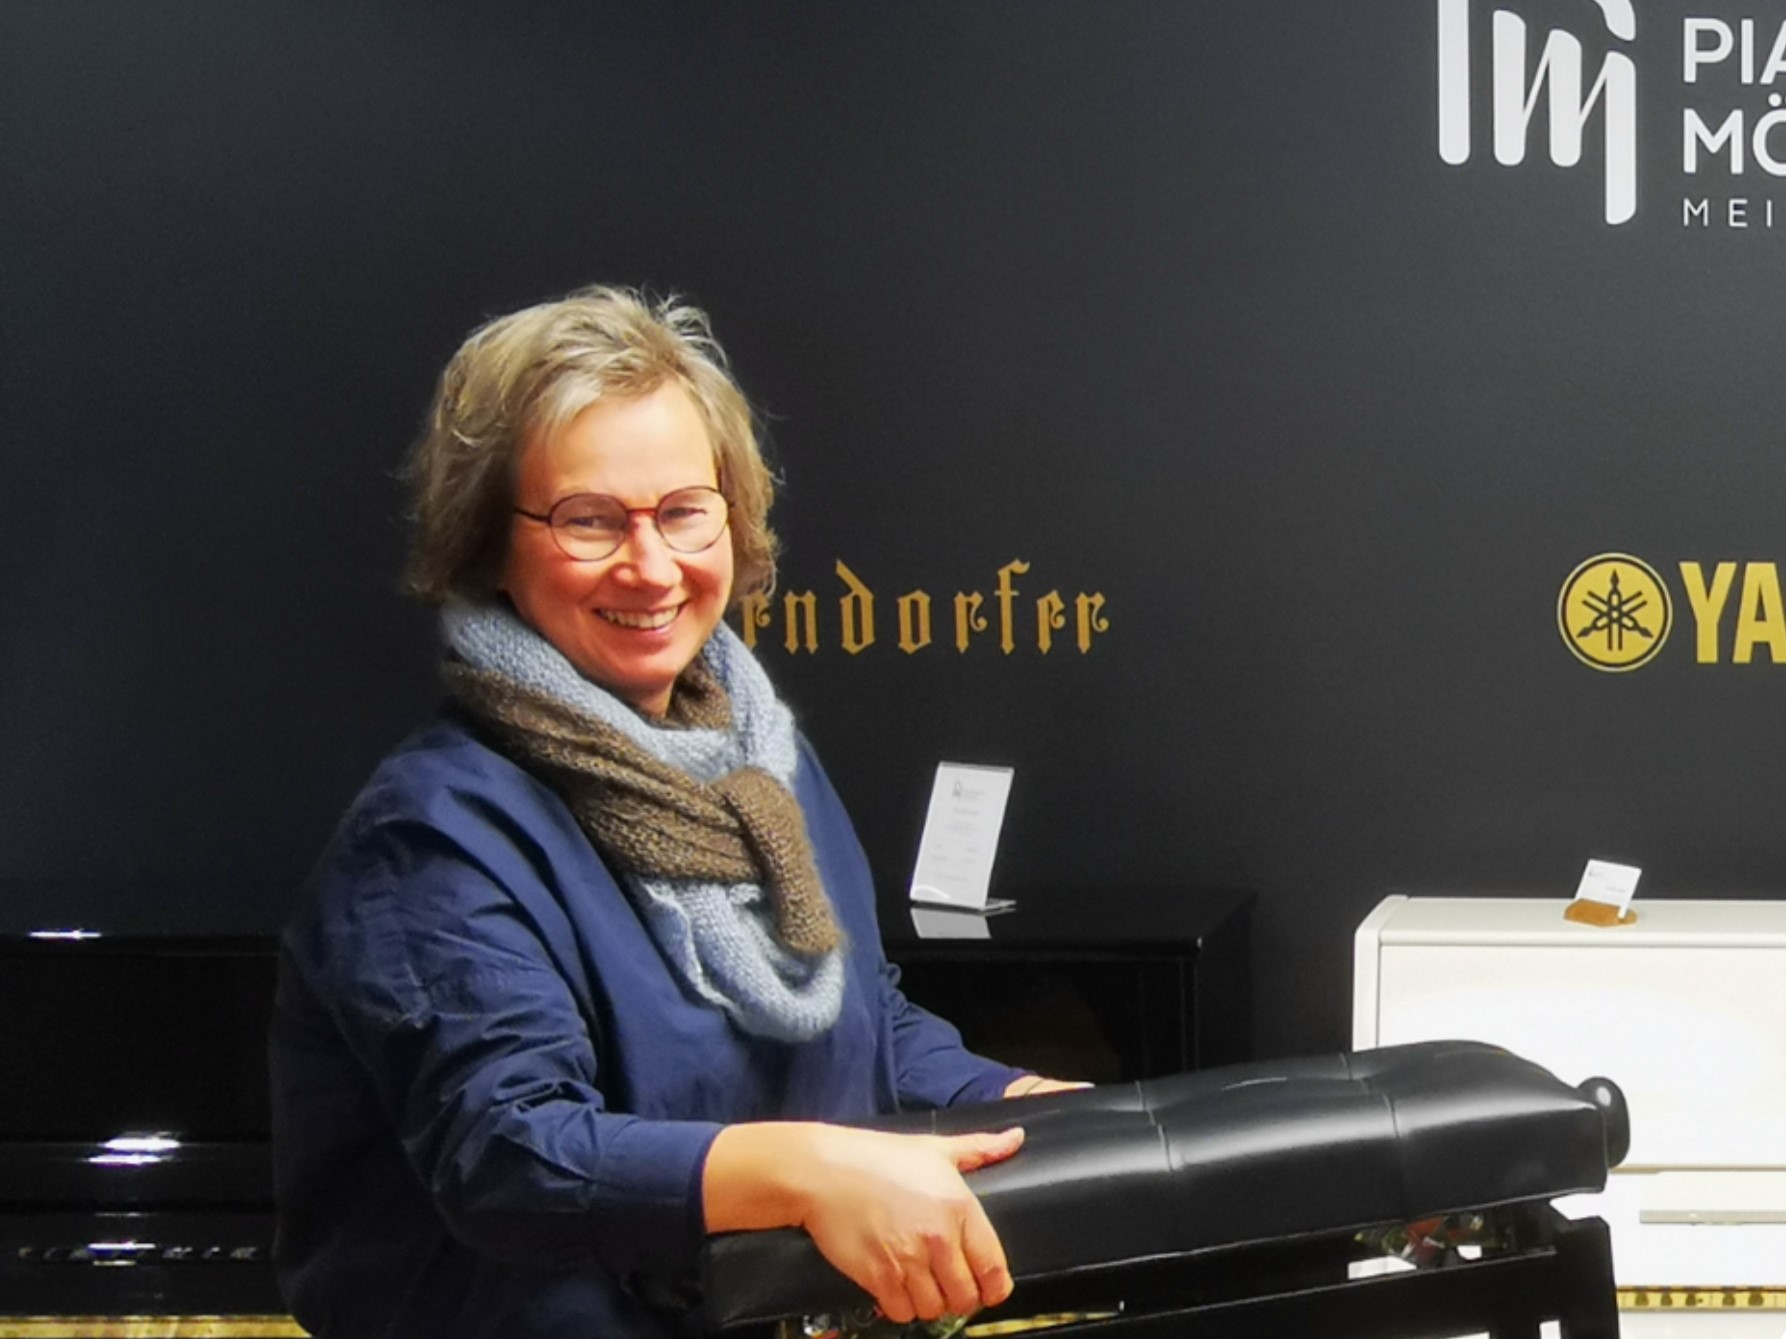 Bild zeigt Frau Petra Möller vom Pianohaus Möller mit dem Klavierhocker in der Hand